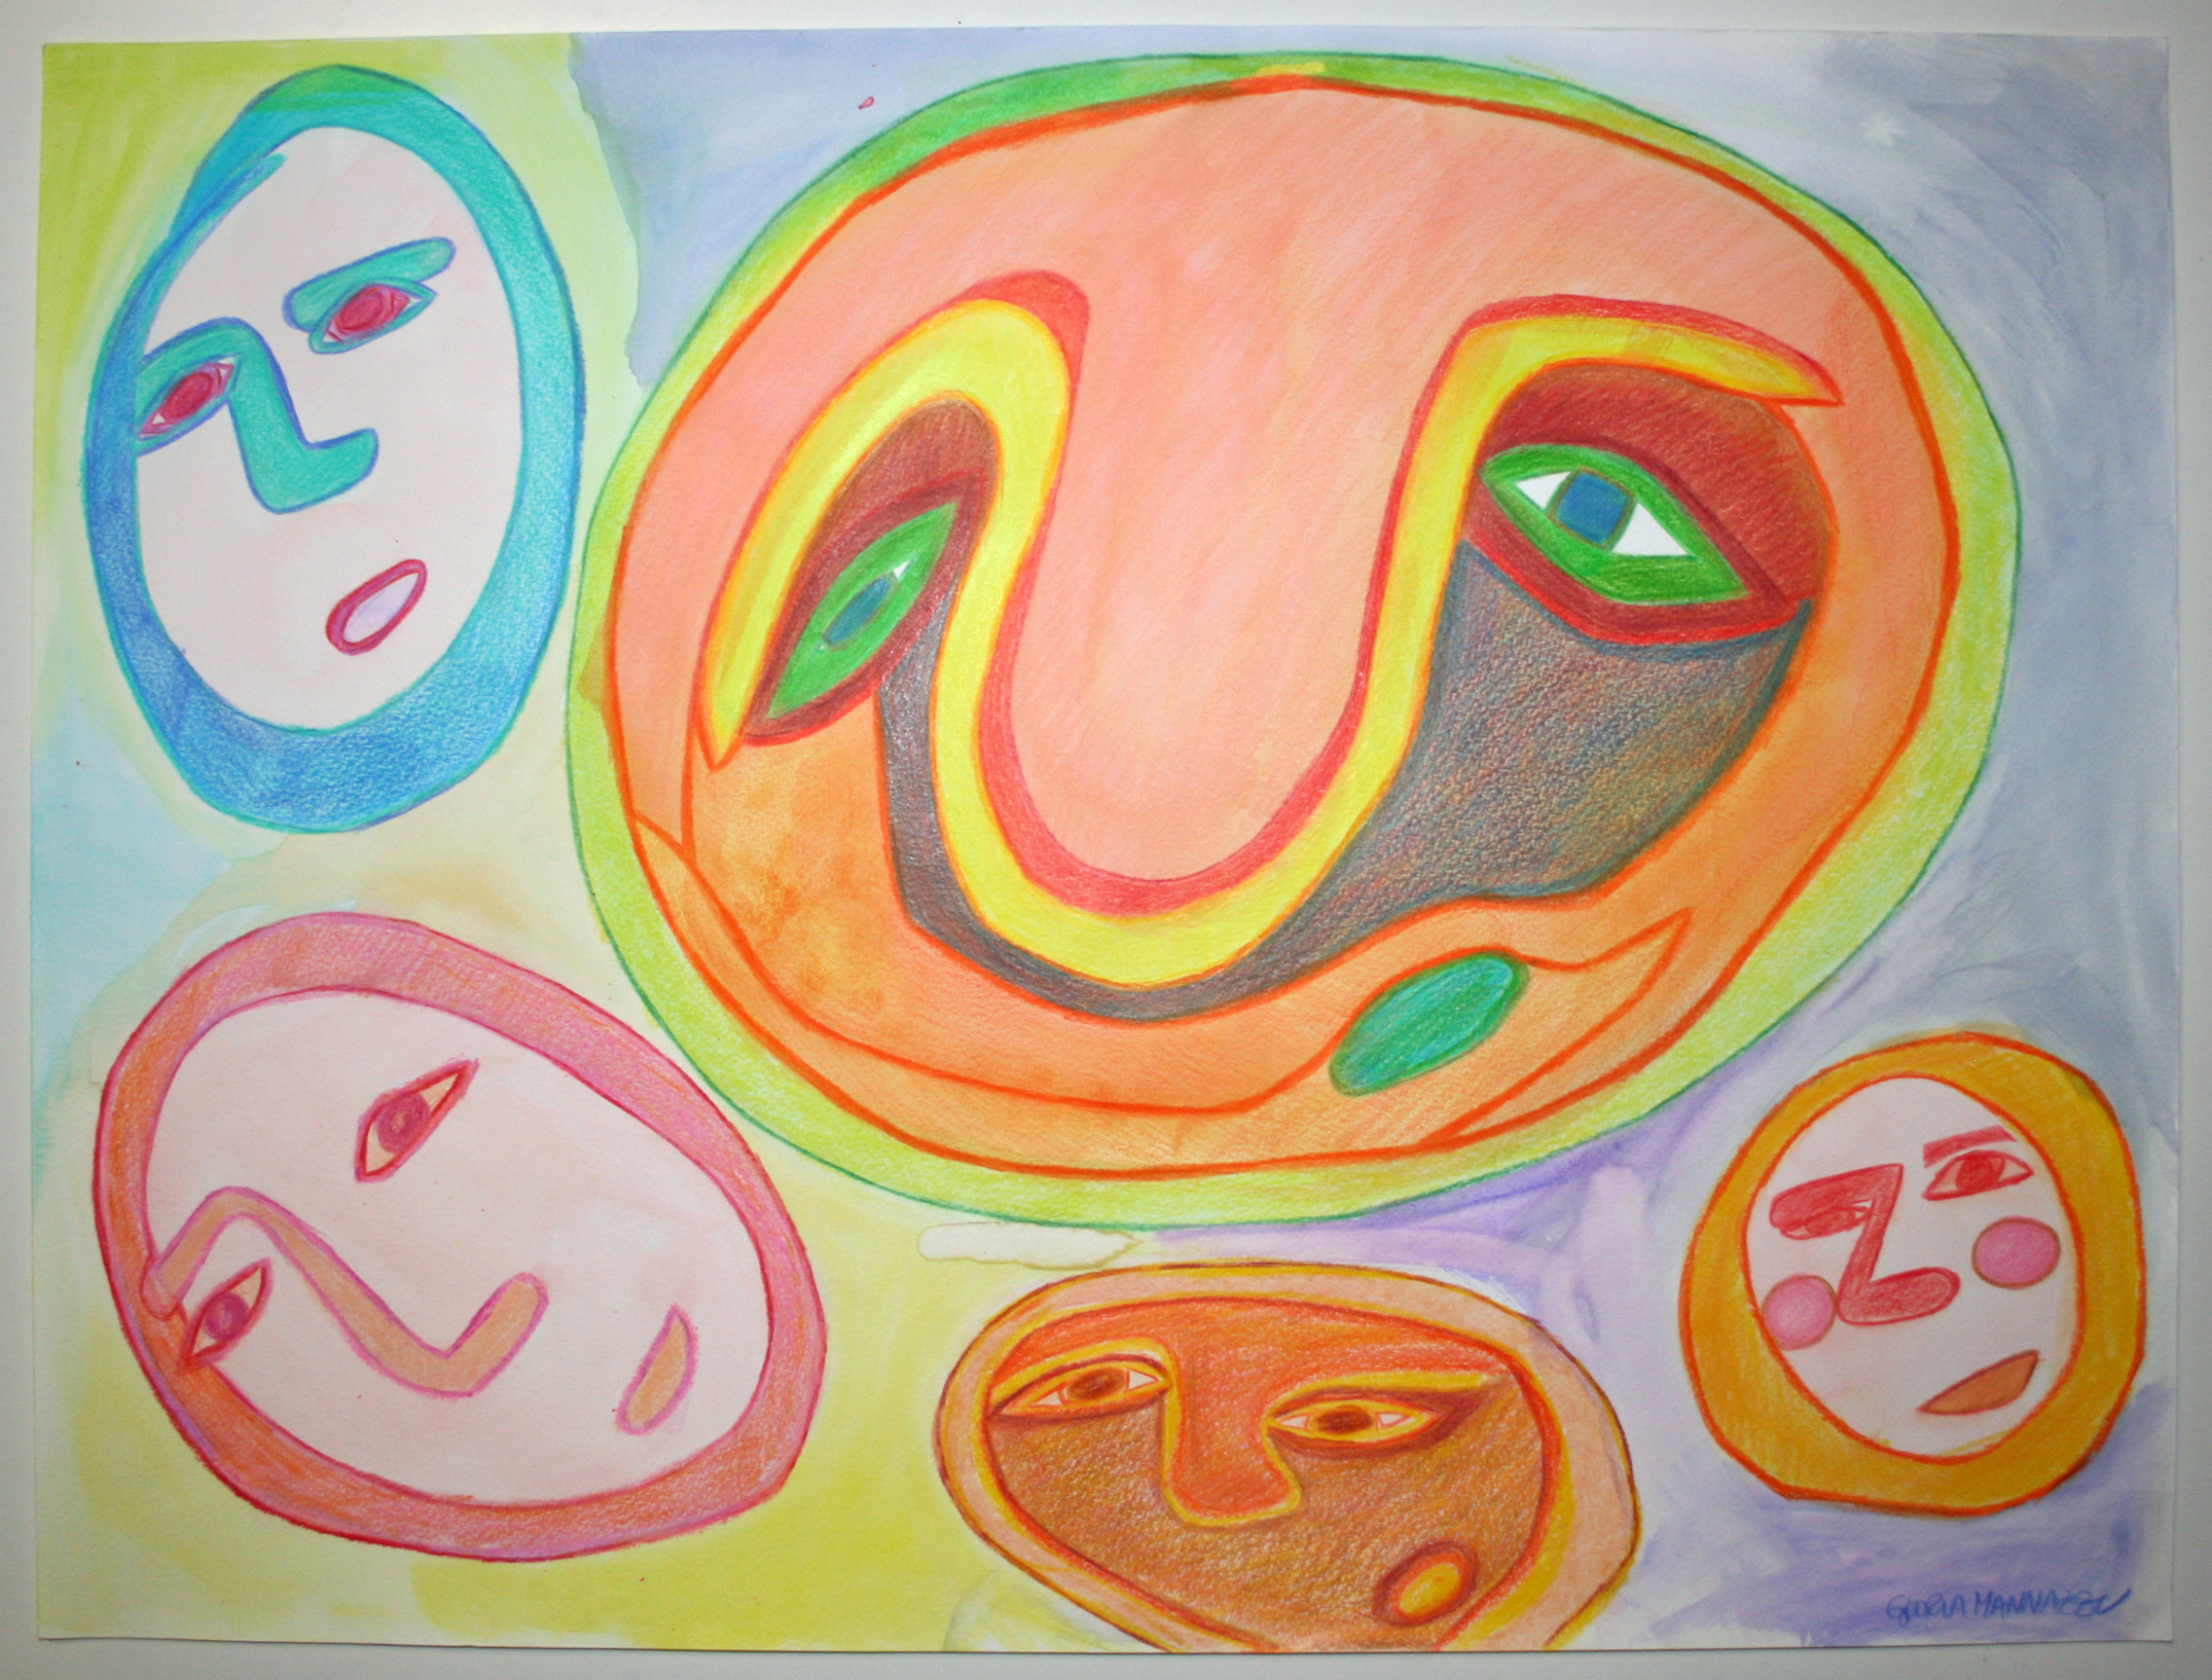 Gloria Mannazzu, "Five Faces", (2015).